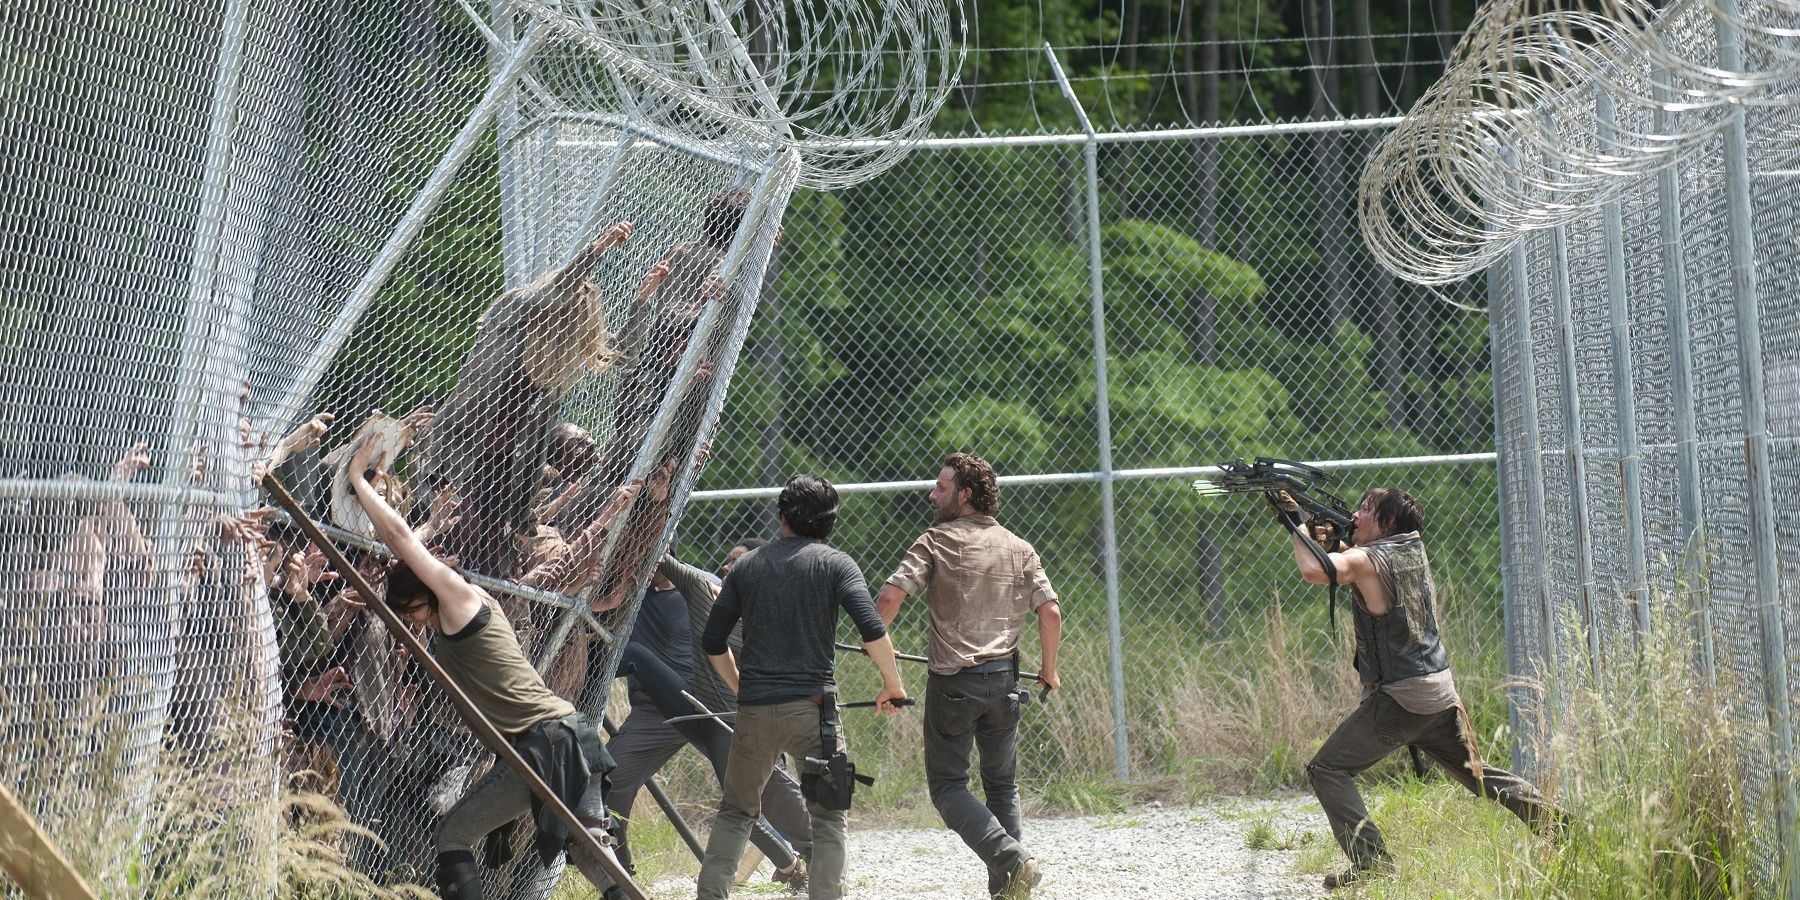 Walking-Dead-Walkers-prison-fence